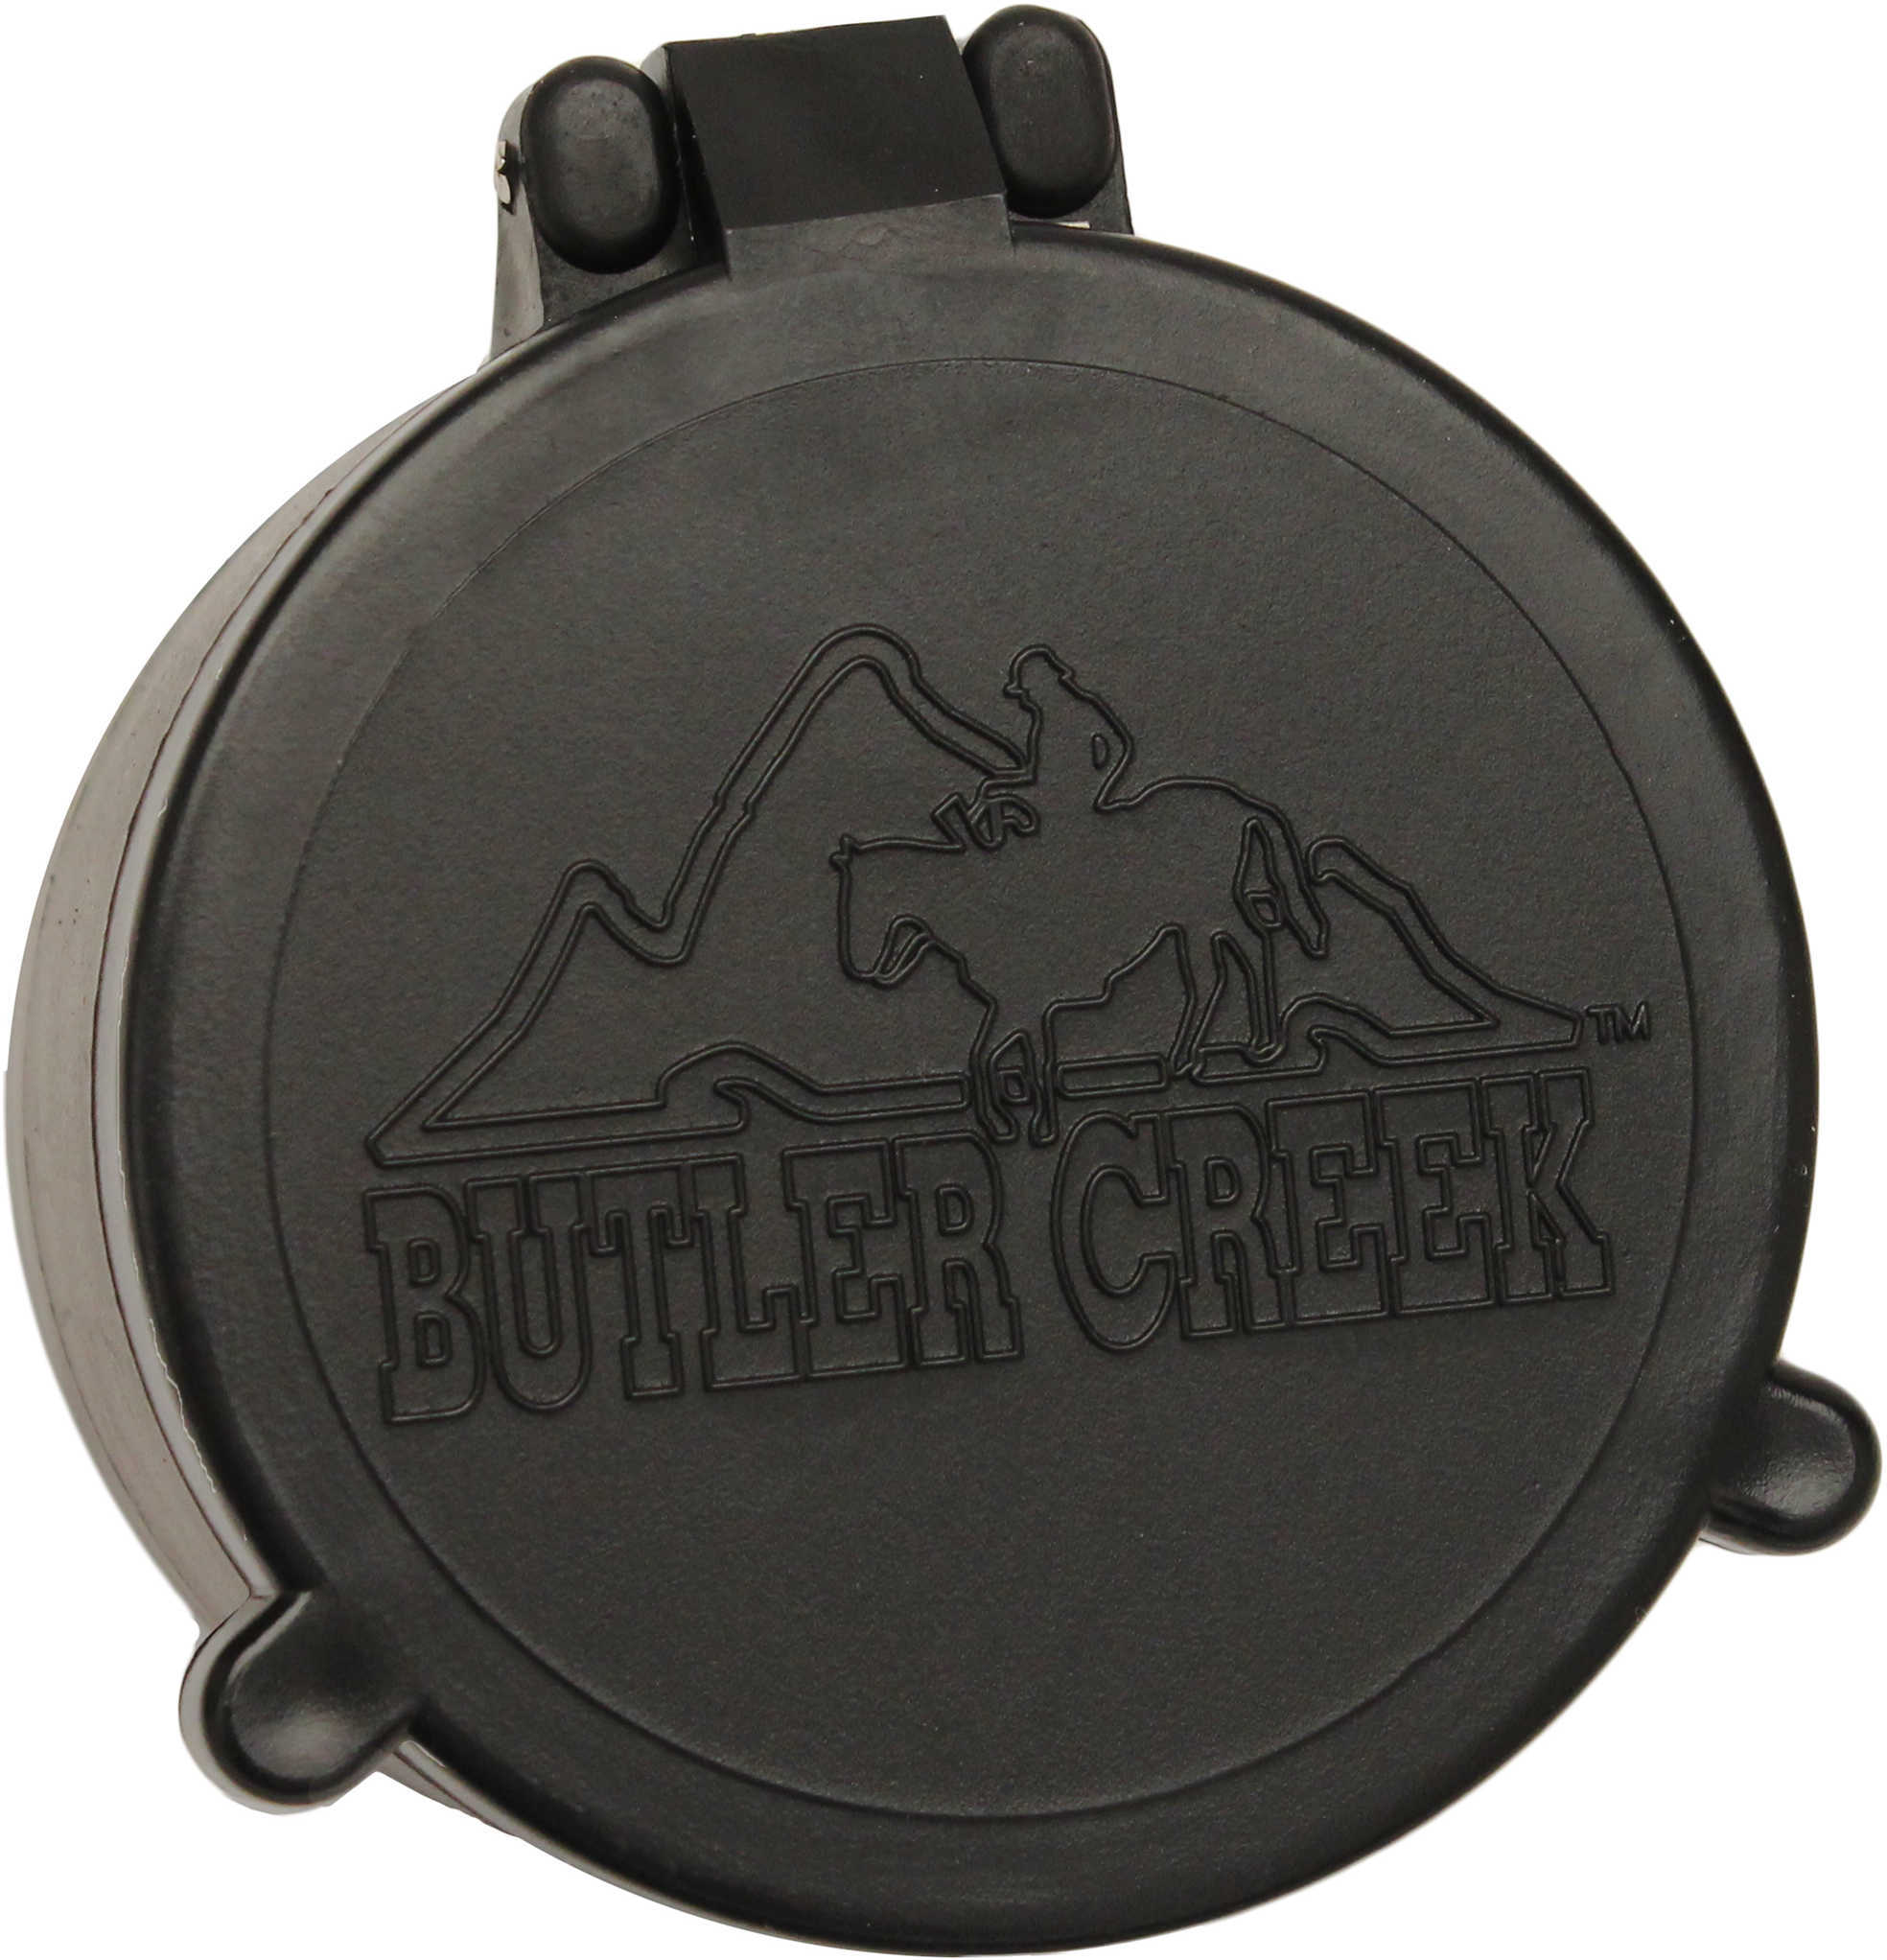 Butler Creek 30090 Flip-Open Scope Cover Objective Lens 37.70mm Slip On Polymer Black